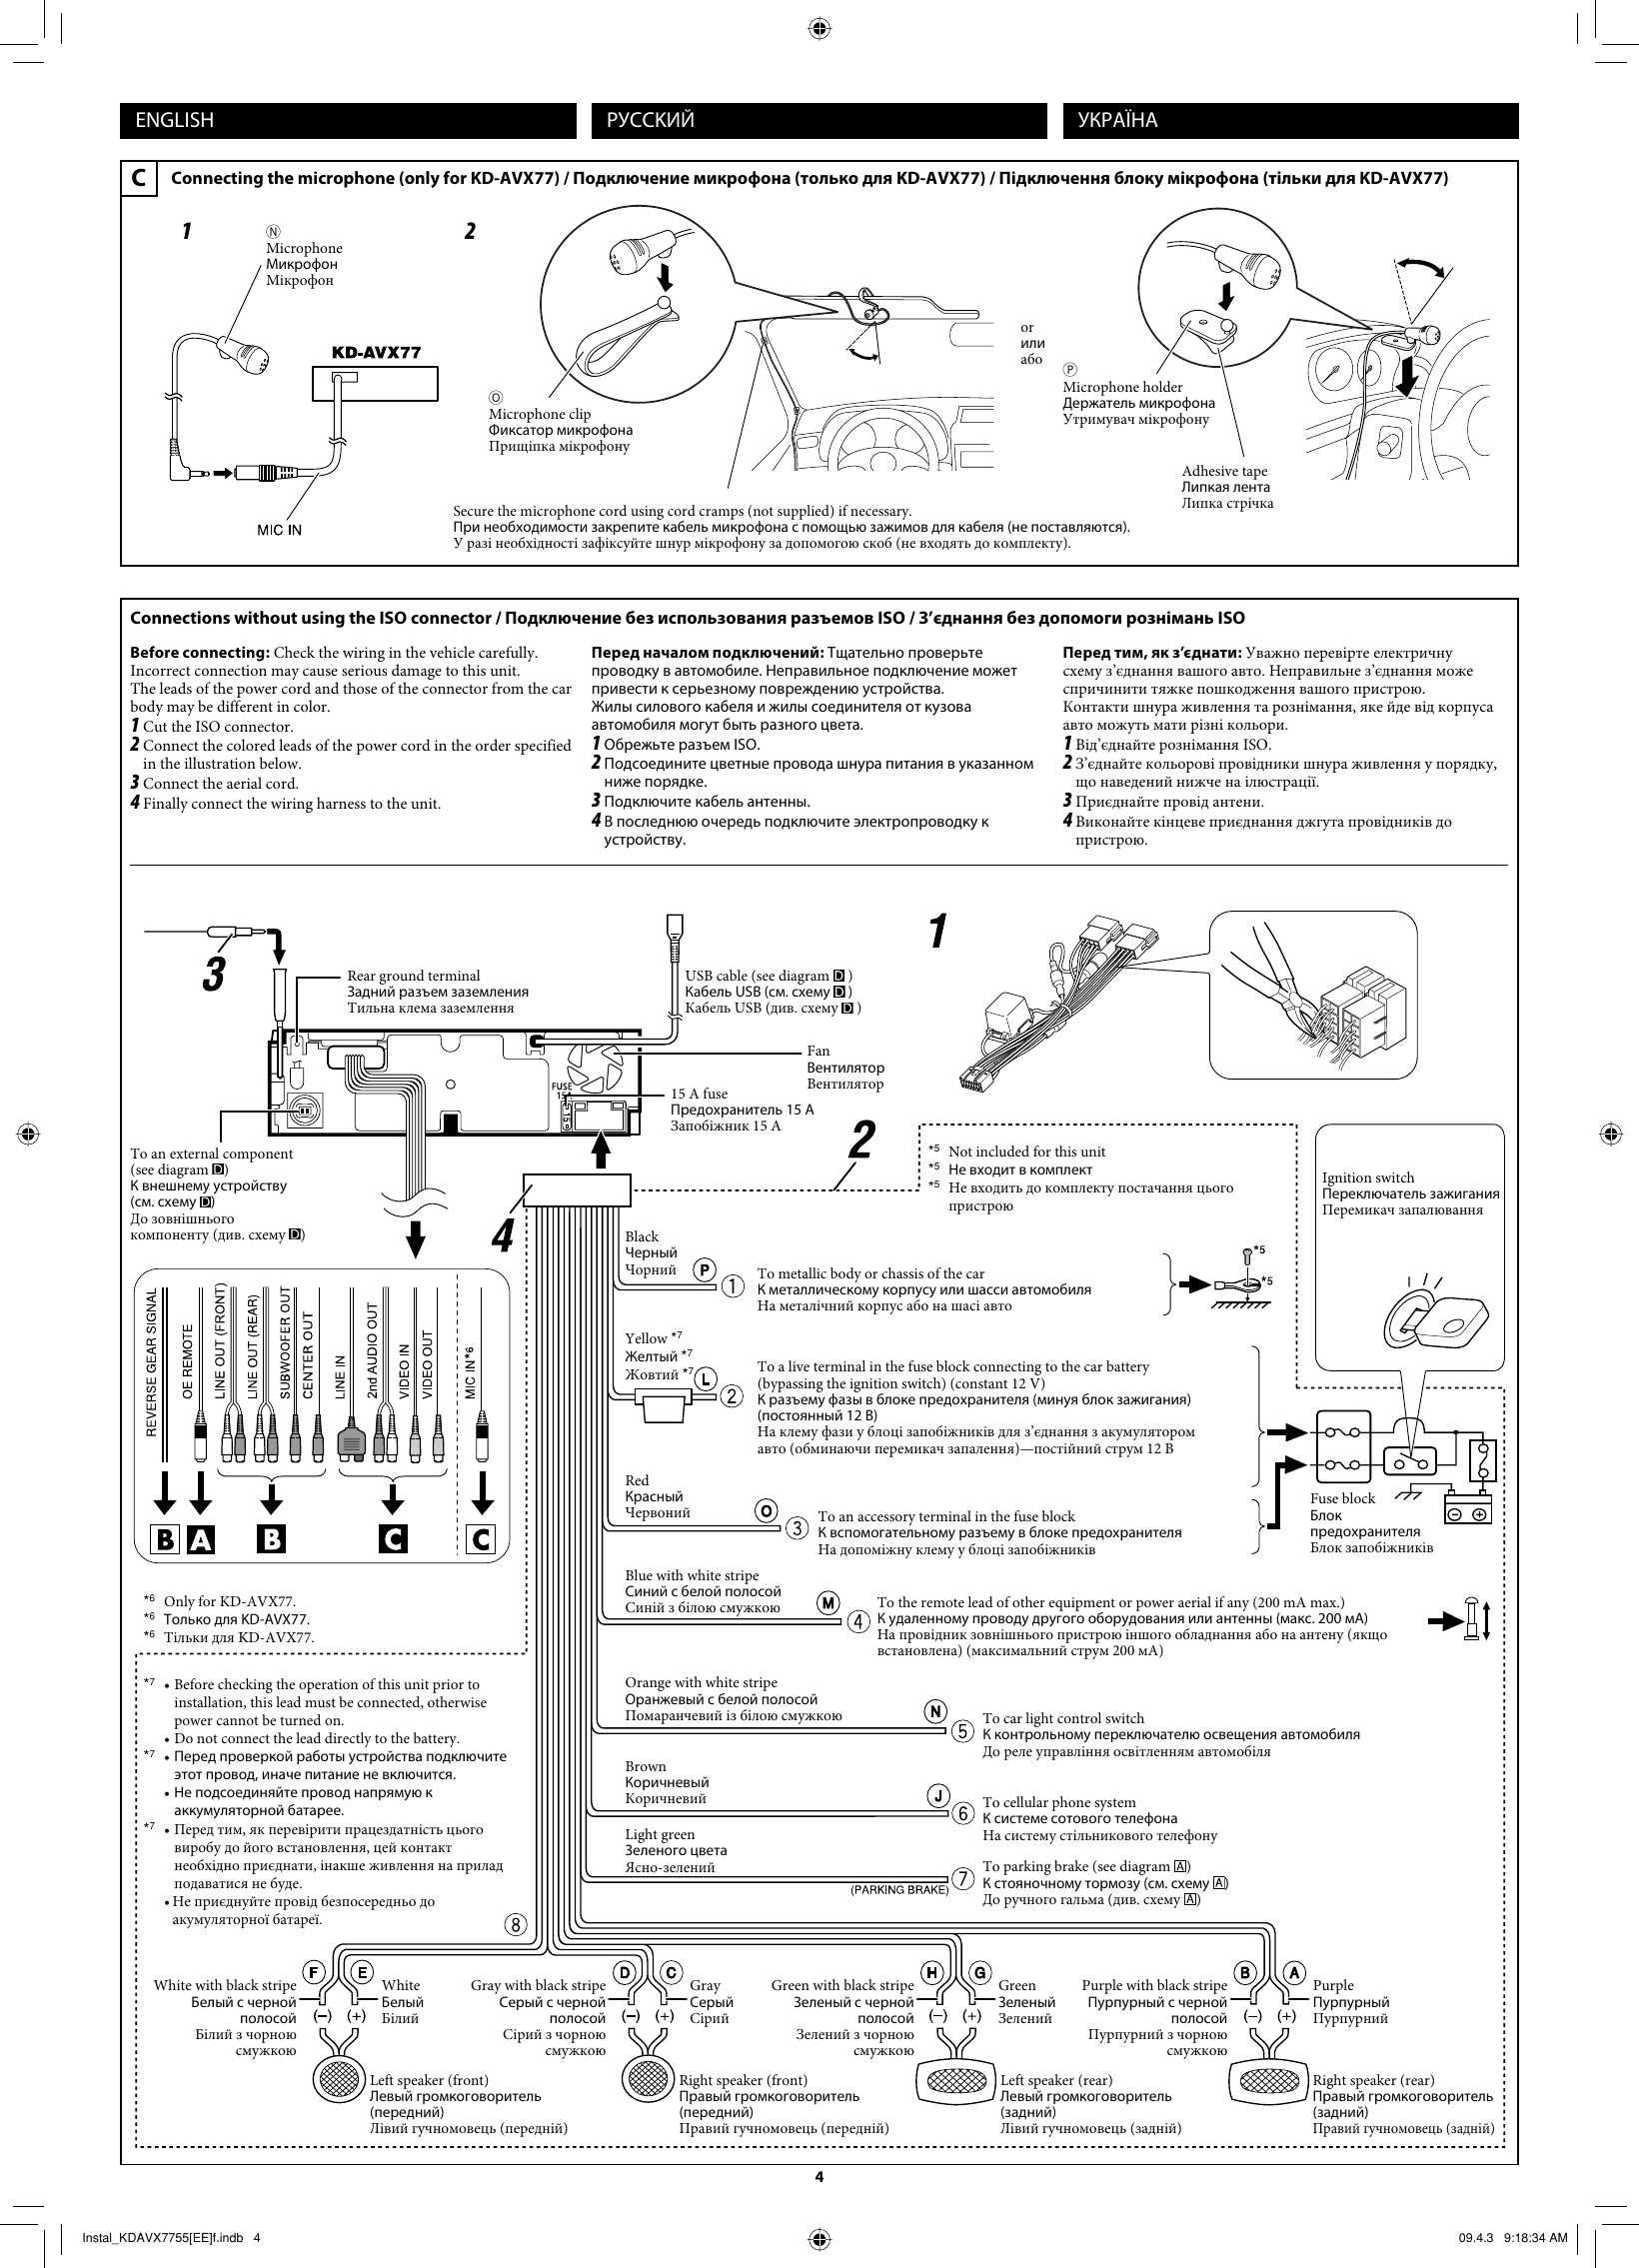 Page 4 of 6 - JVC KD-AVX55EE KD-AVX77/KD-AVX55 User Manual KD-AVX55EE, KD-AVX77EE LVT1938-011A